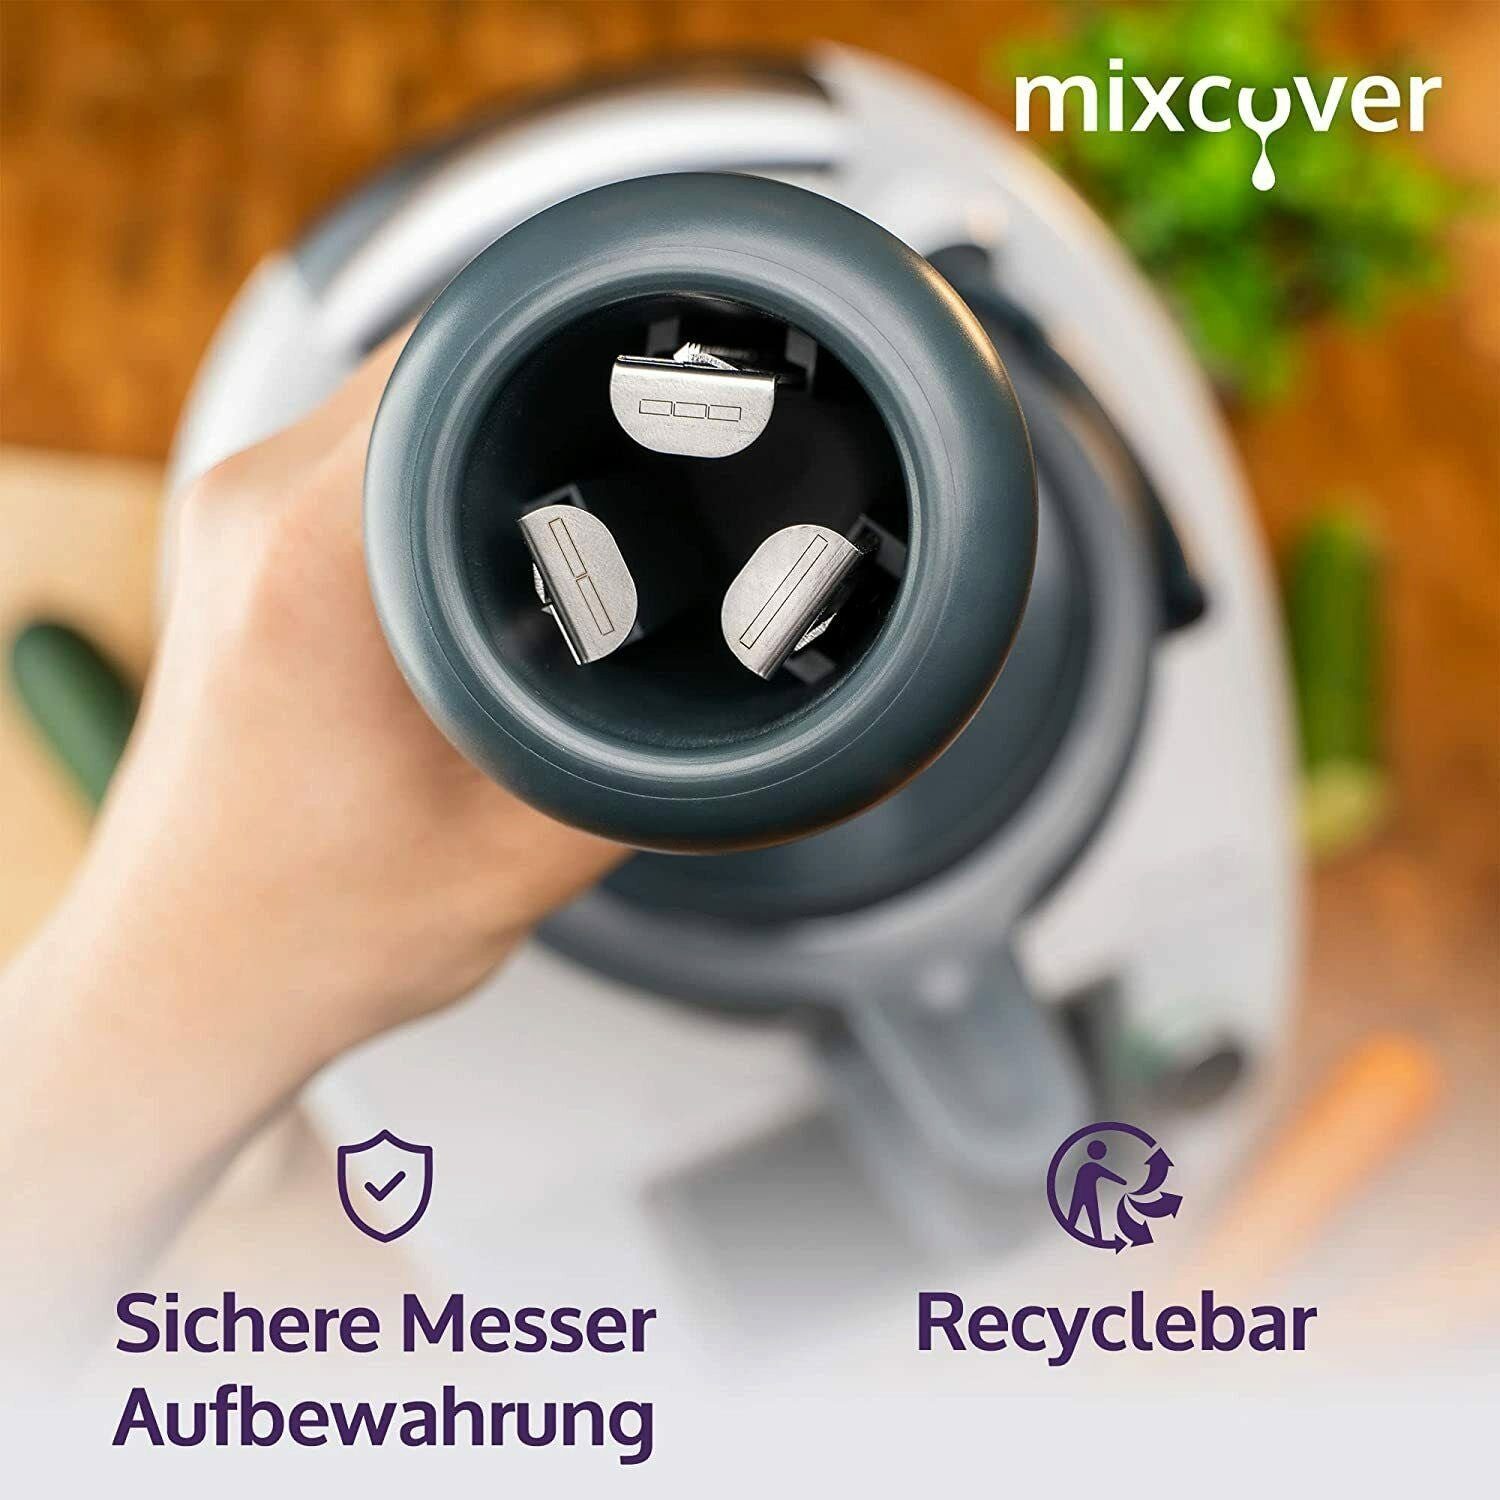 TM5 Gemüsenudeln Küchenmaschinen-Adapter kompatibel mixcover TM6 Mixcover Thermomix mit schneiden Spiralschneider